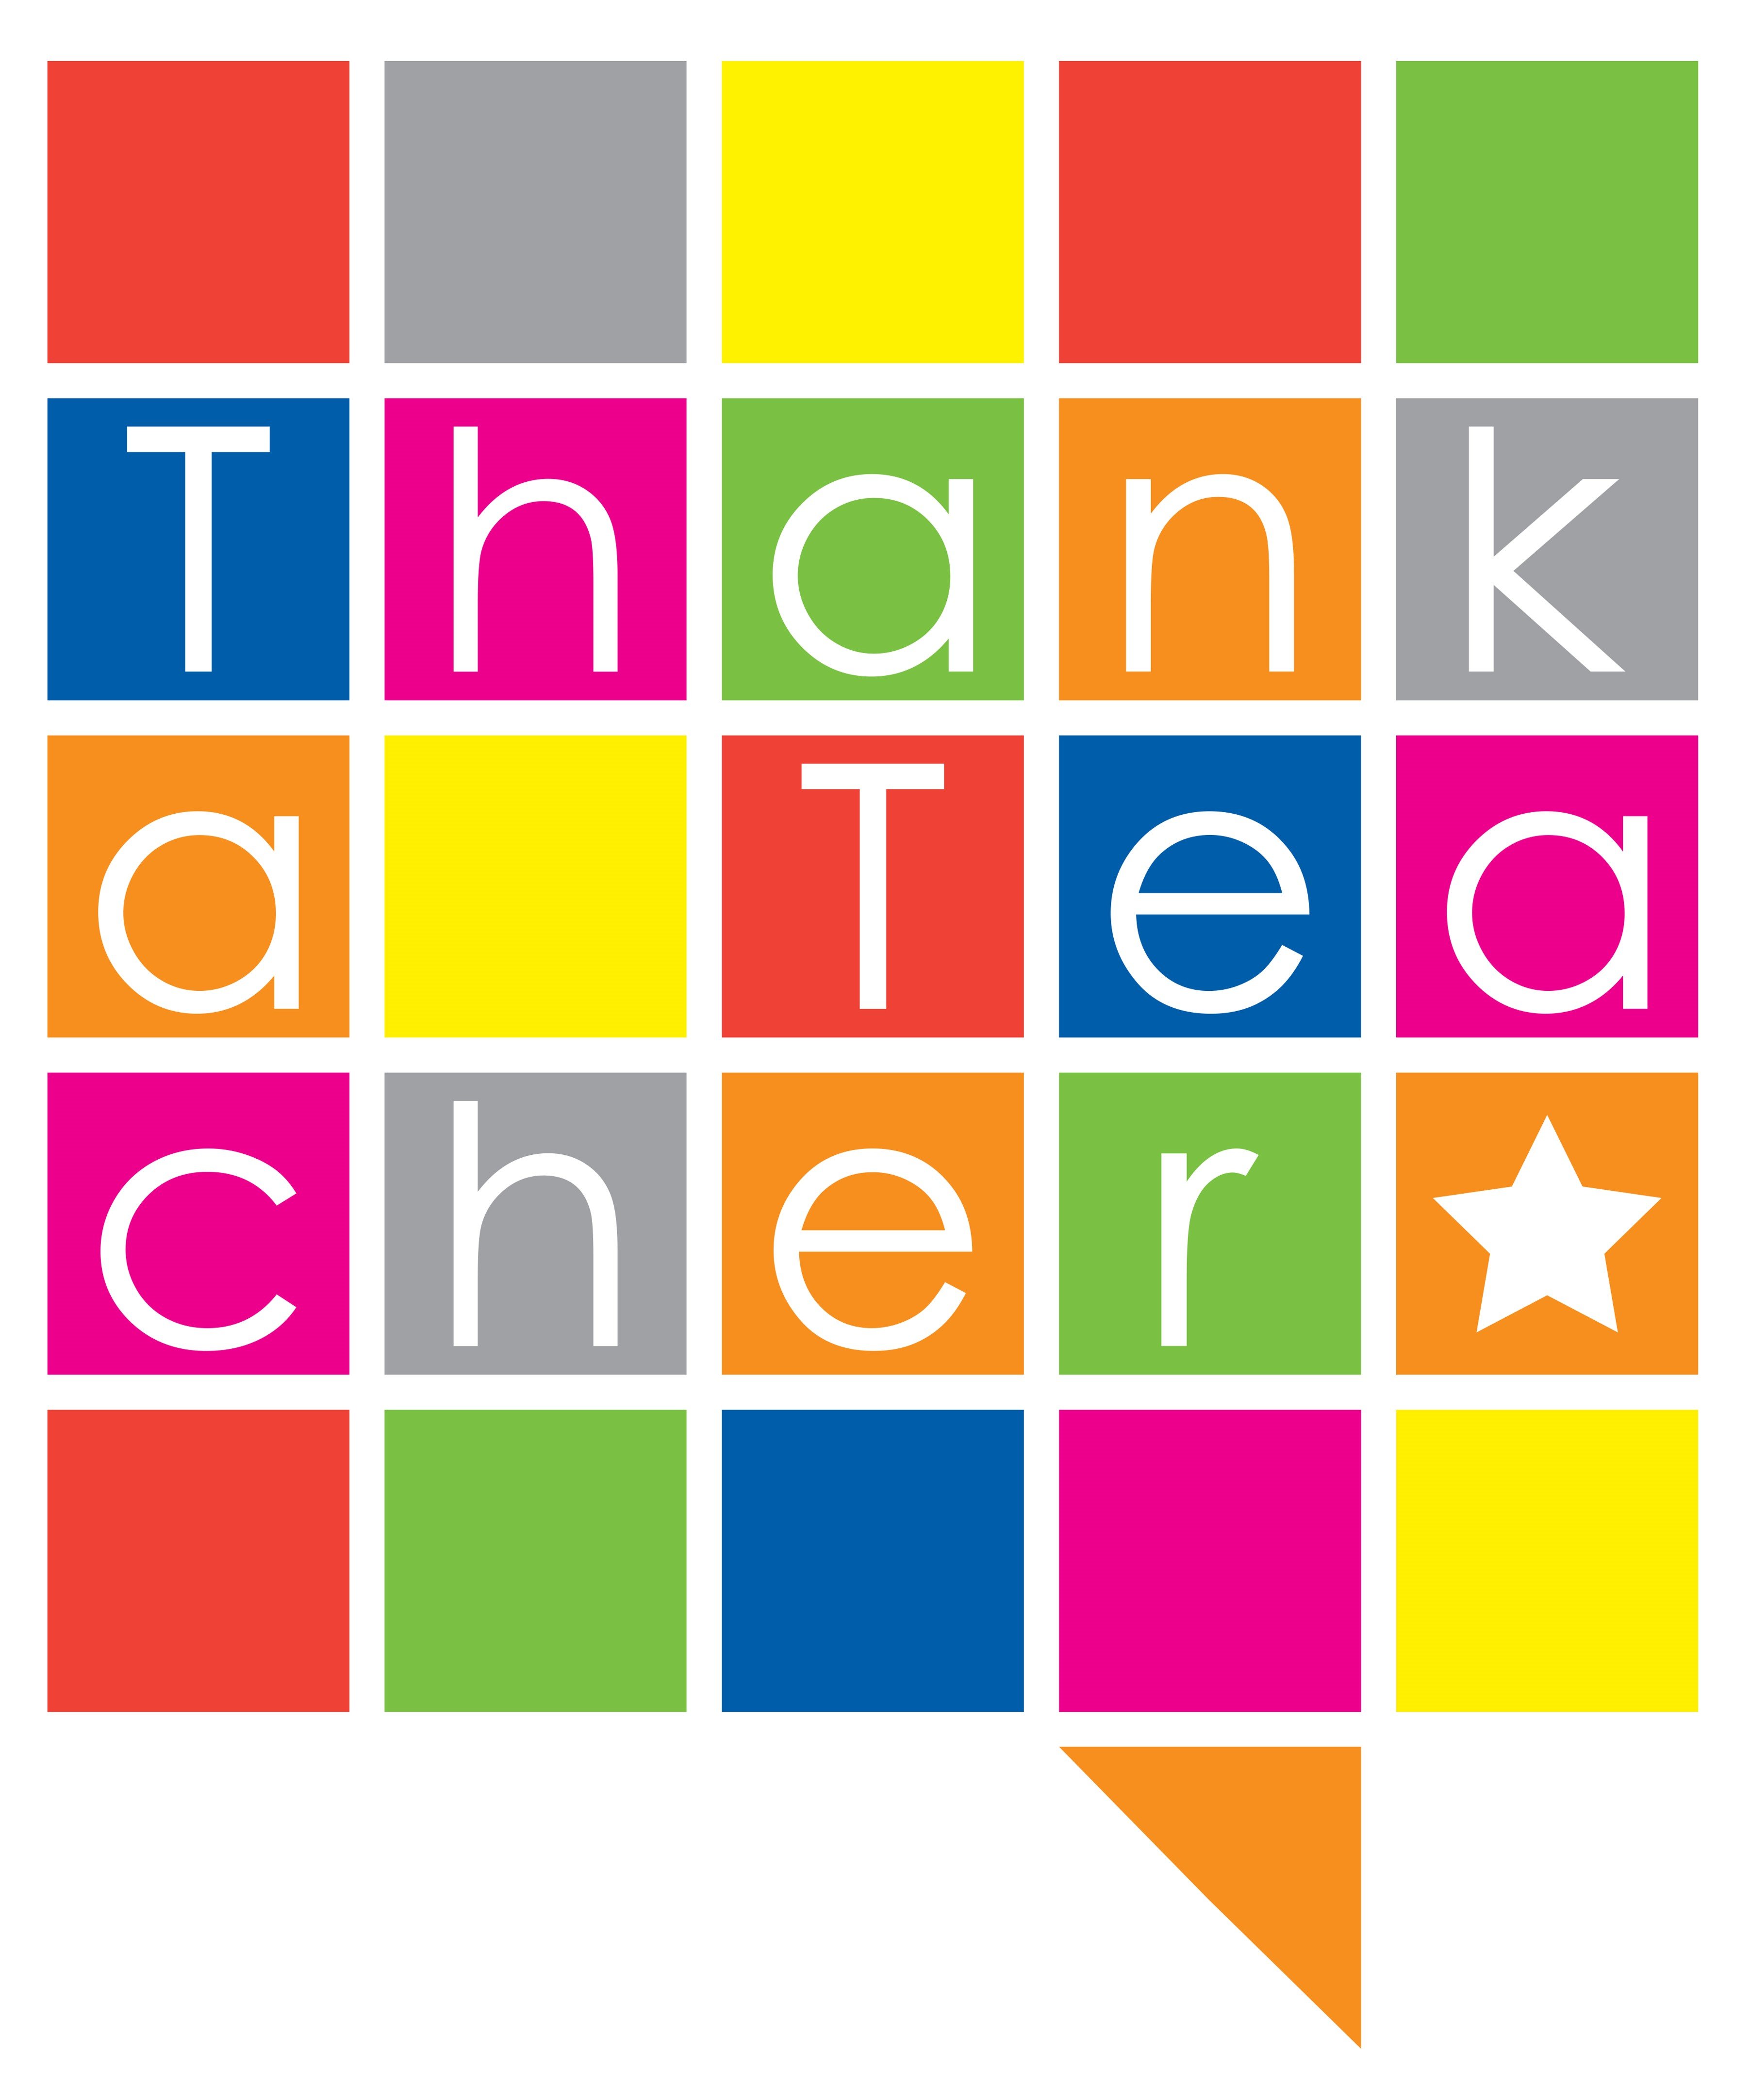 (c) Thankateacher.co.uk